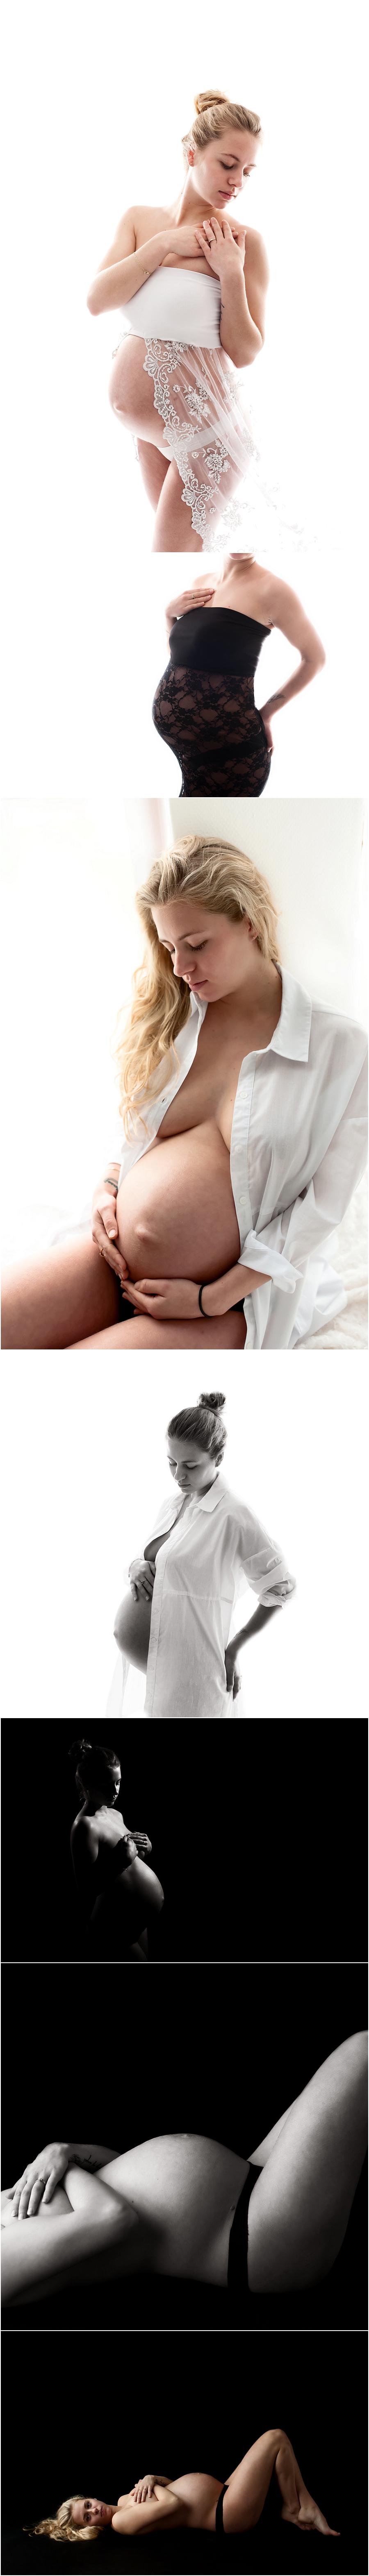 Beau 35 weken zwanger - Zwangerschapsfotografie Veghel